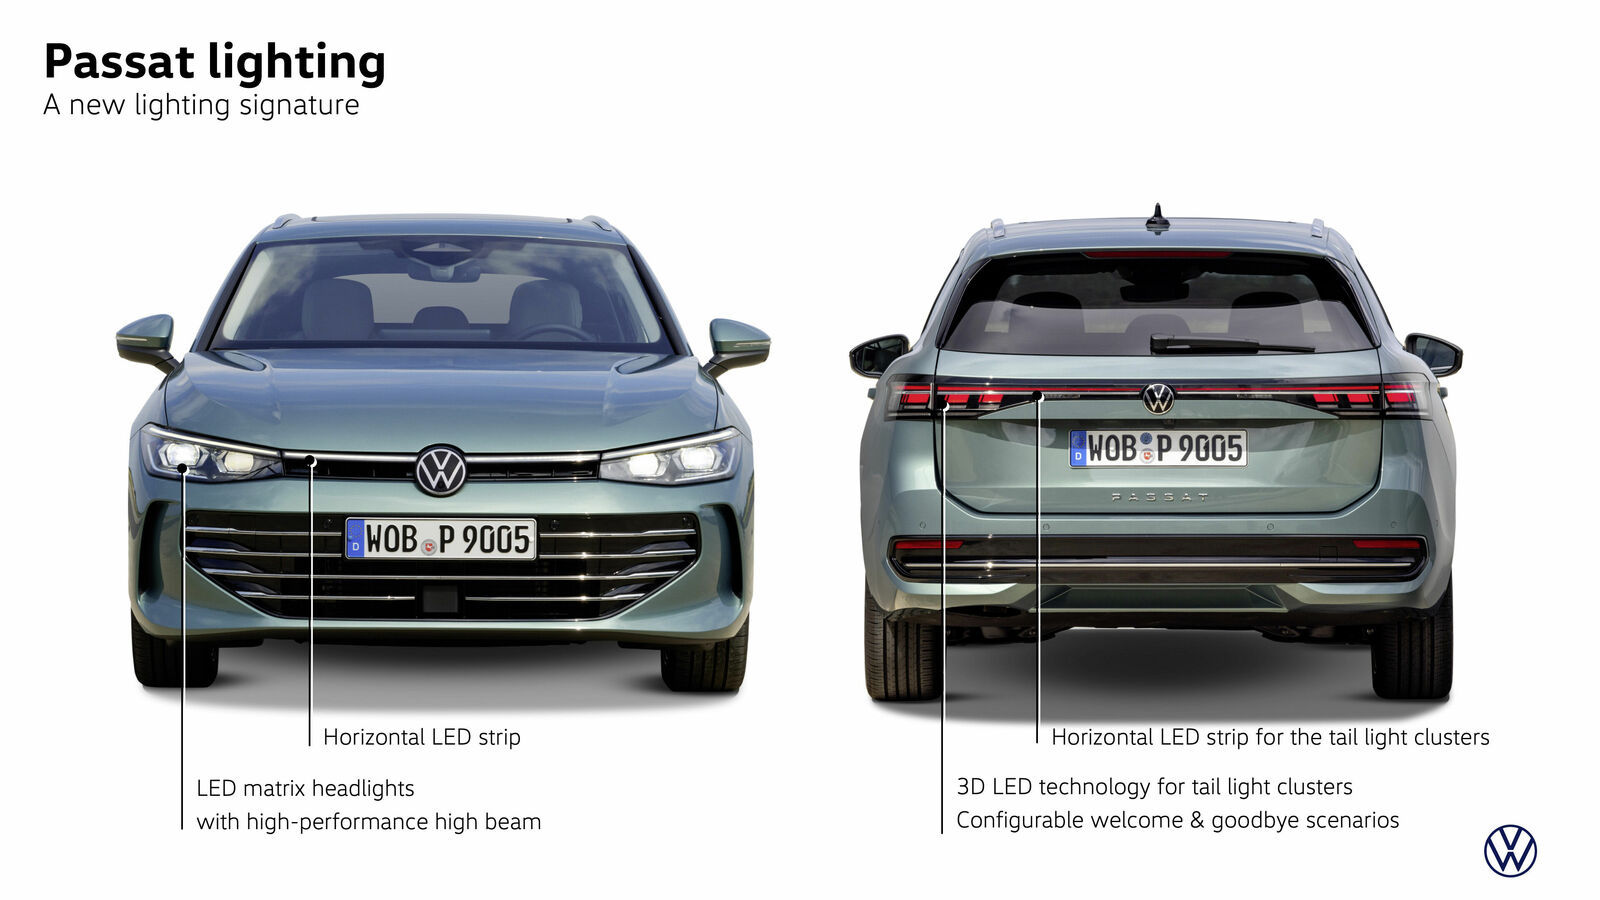 The all-new Volkswagen Passat